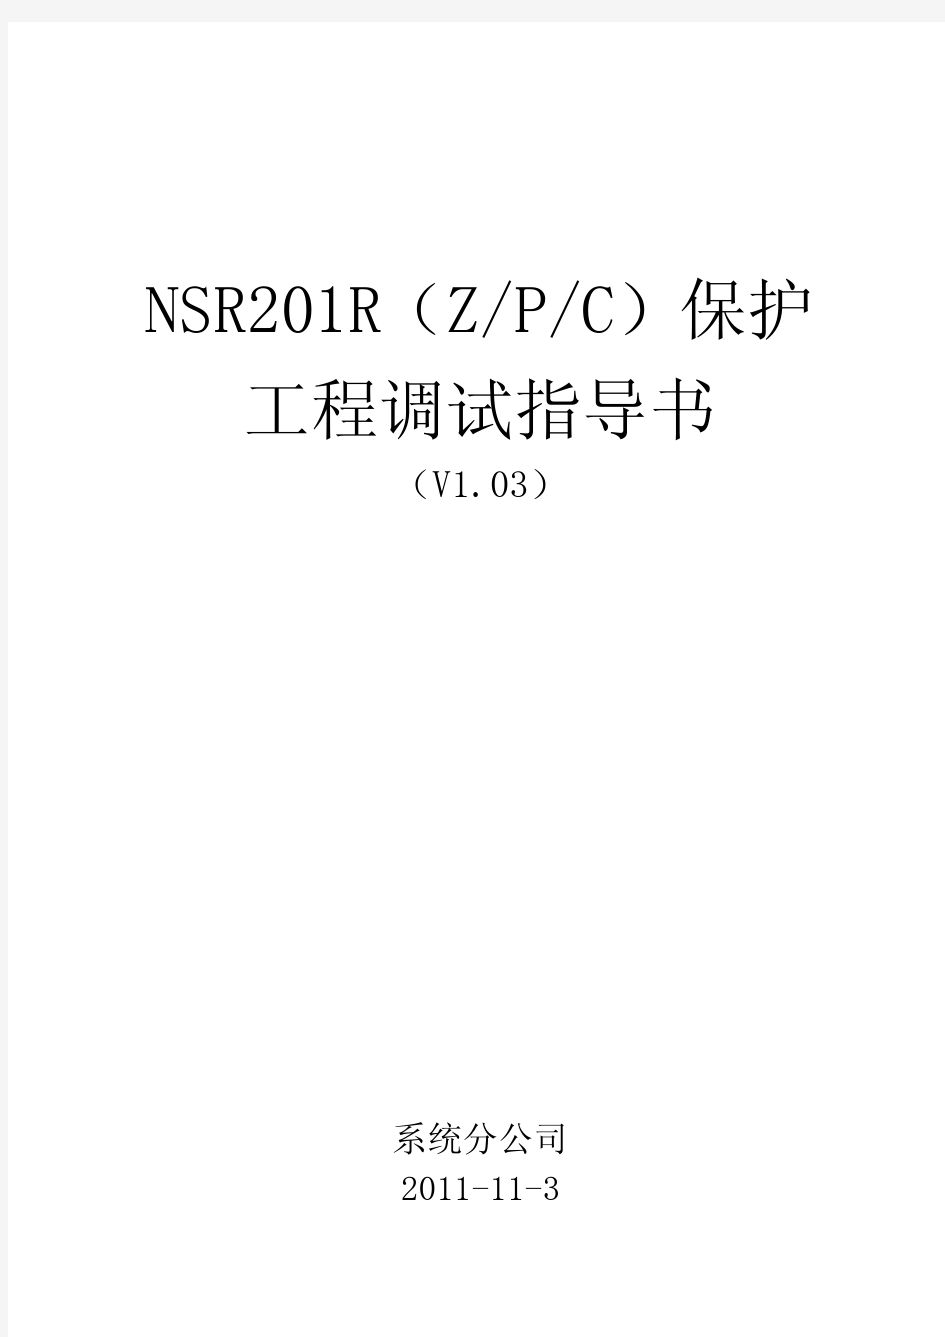 NSR201R保护工程调试指导书(V1.03)